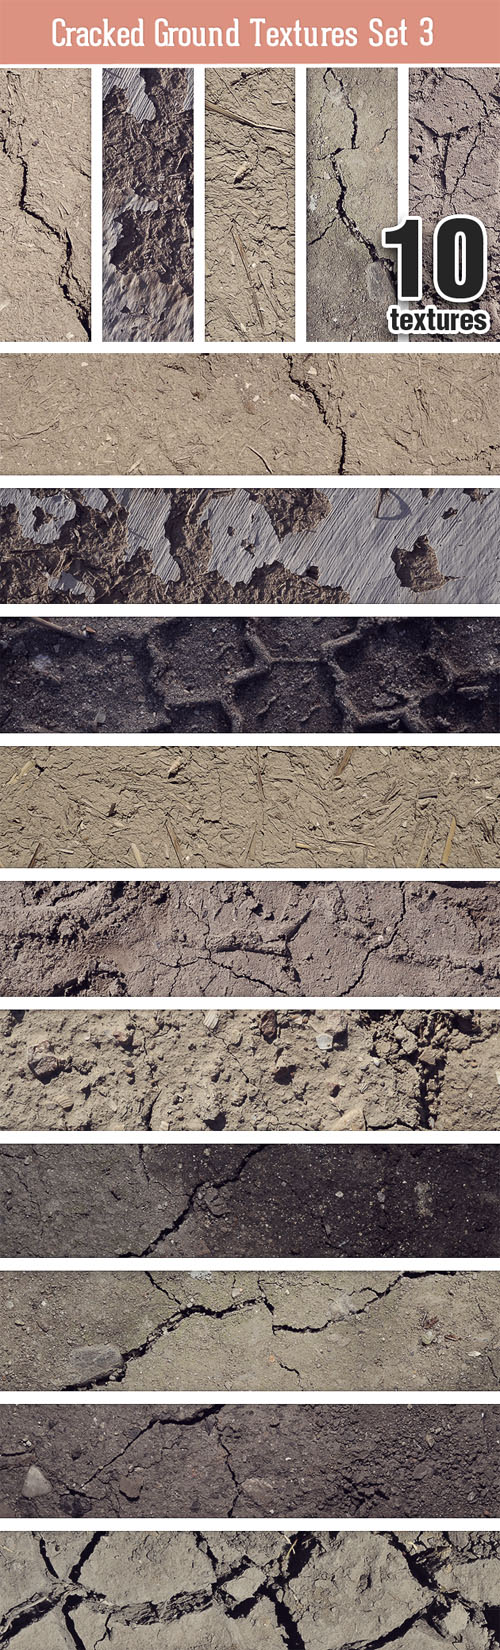 Designtnt - Cracked Ground Texture Set 3